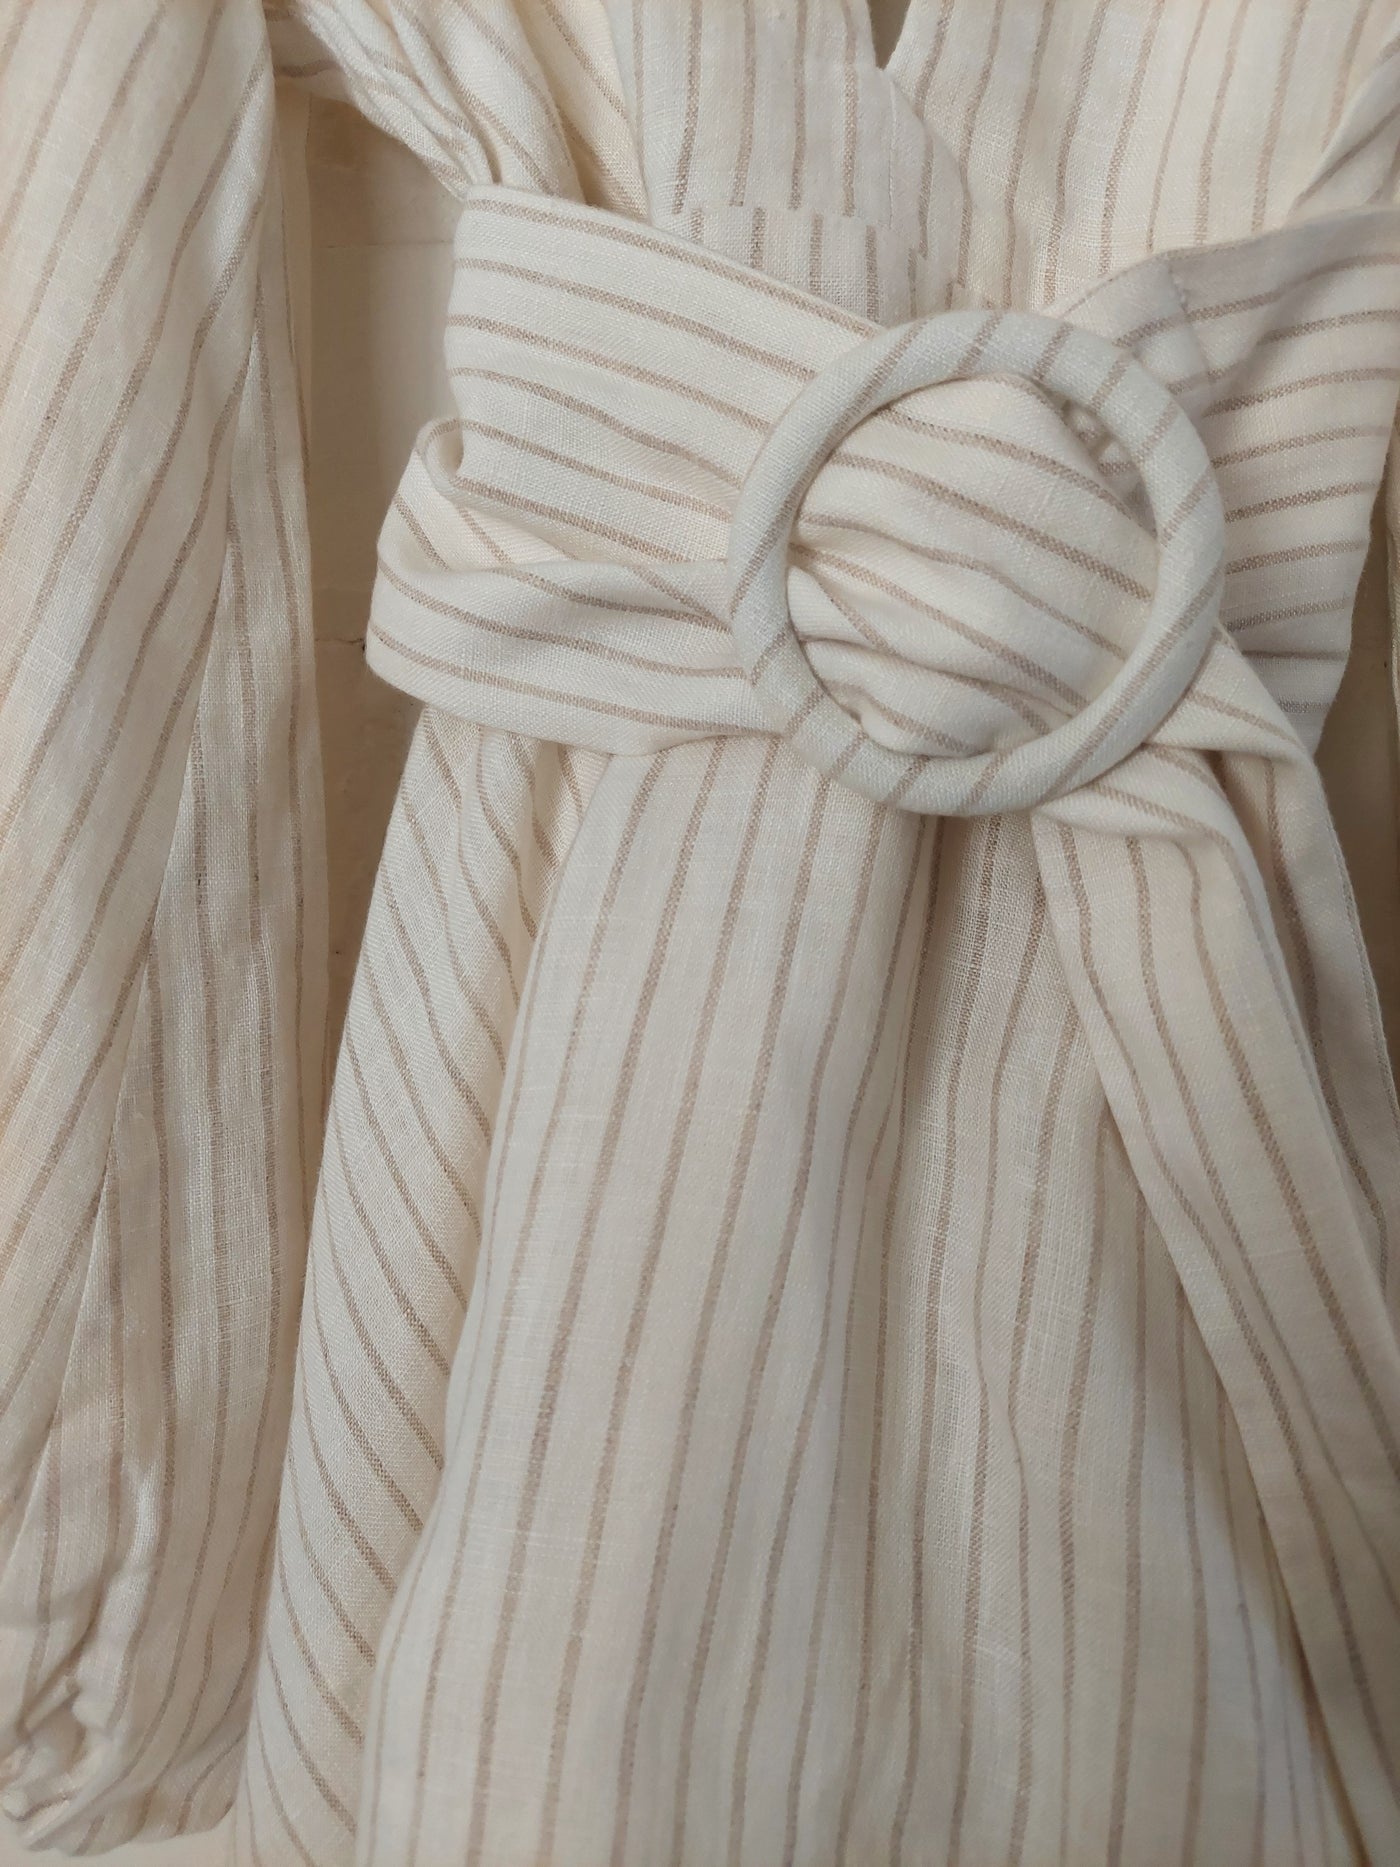 Shona Joy BNWT 'Isadora' Plunge Mini Dress with Belt, Size 14